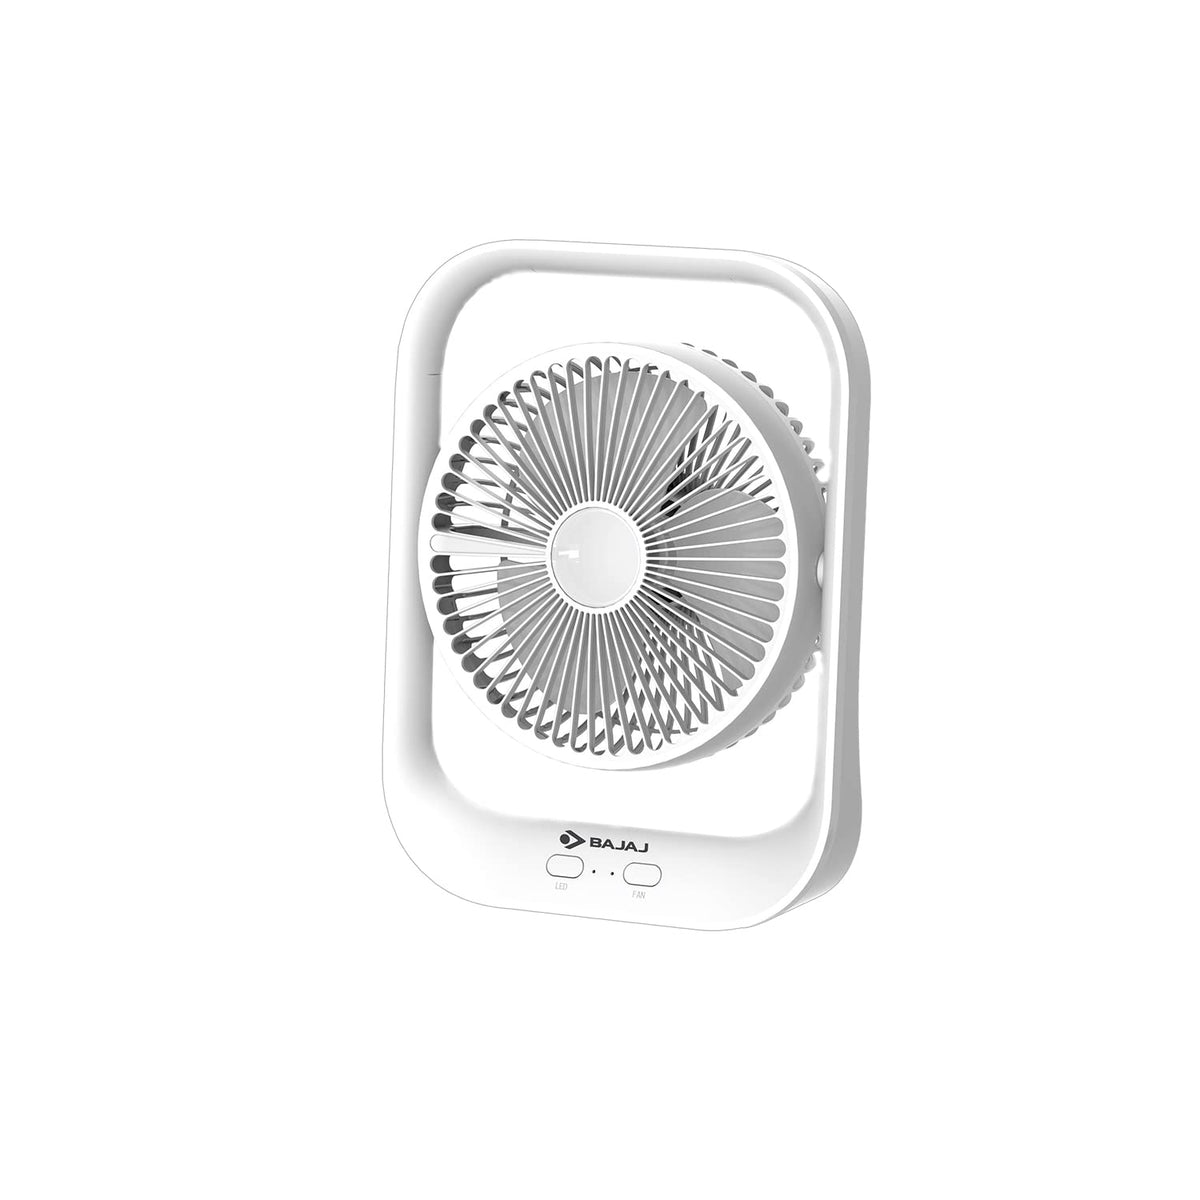 Bajaj Pygmy 178mm | USB Charging Fan | LED Light | 2100 RPM High Speed Table Fan | Silent Operation | Rechargeable Fan | Charging Fans for Home | White Portable Fan